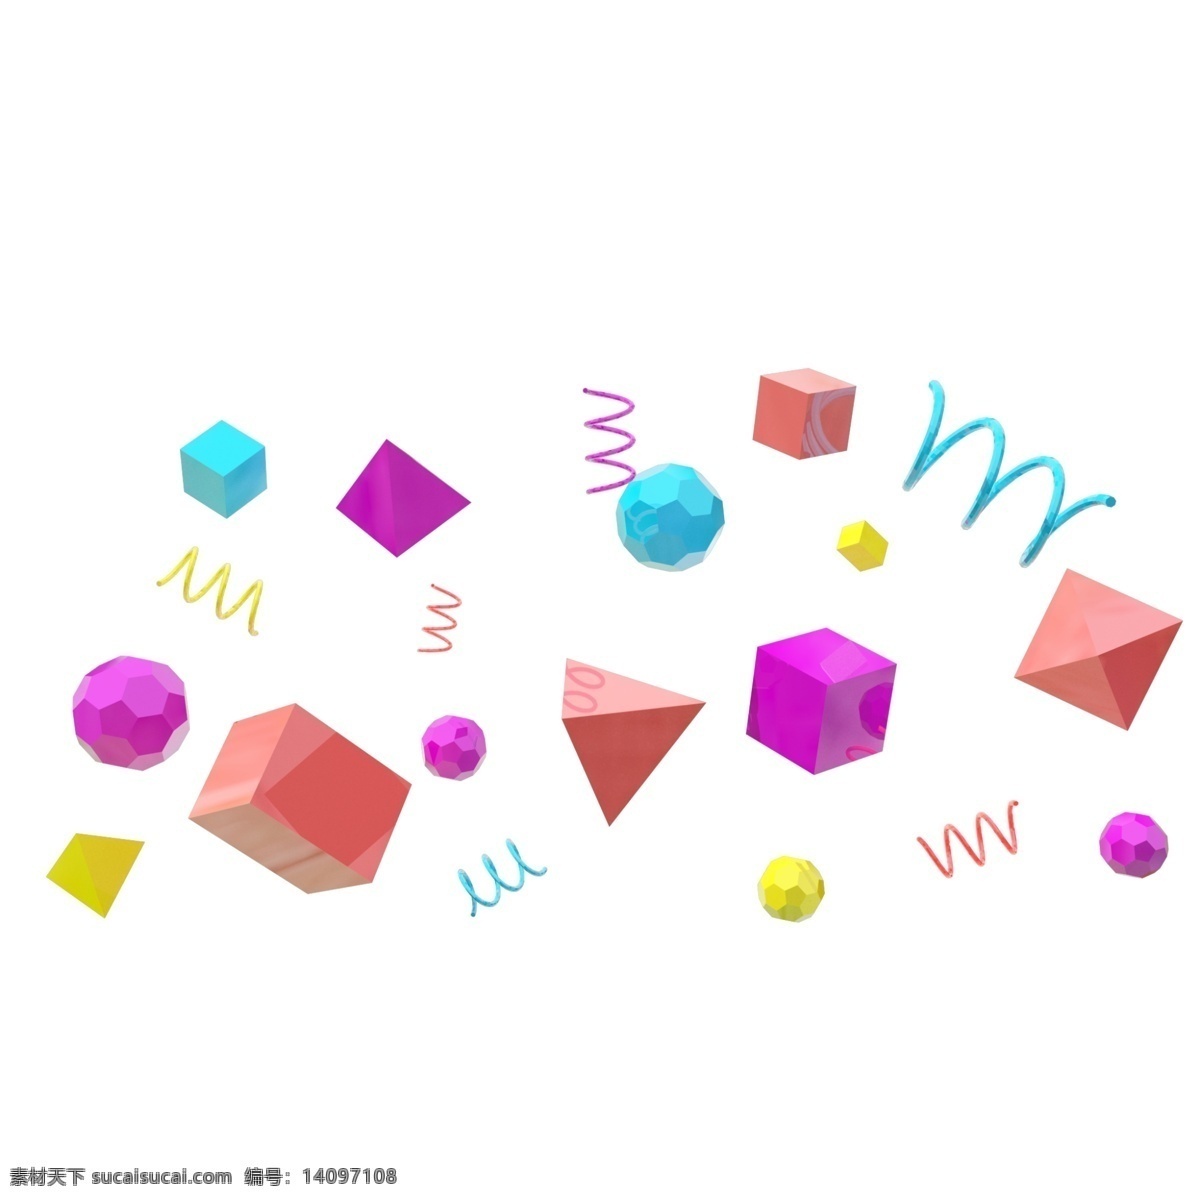 3d 彩色 多边形 悬浮 颗粒 卡通 立体 c4d 电商 紫色 粉色 金色 蓝色 三角形 四边形 球形 螺旋形